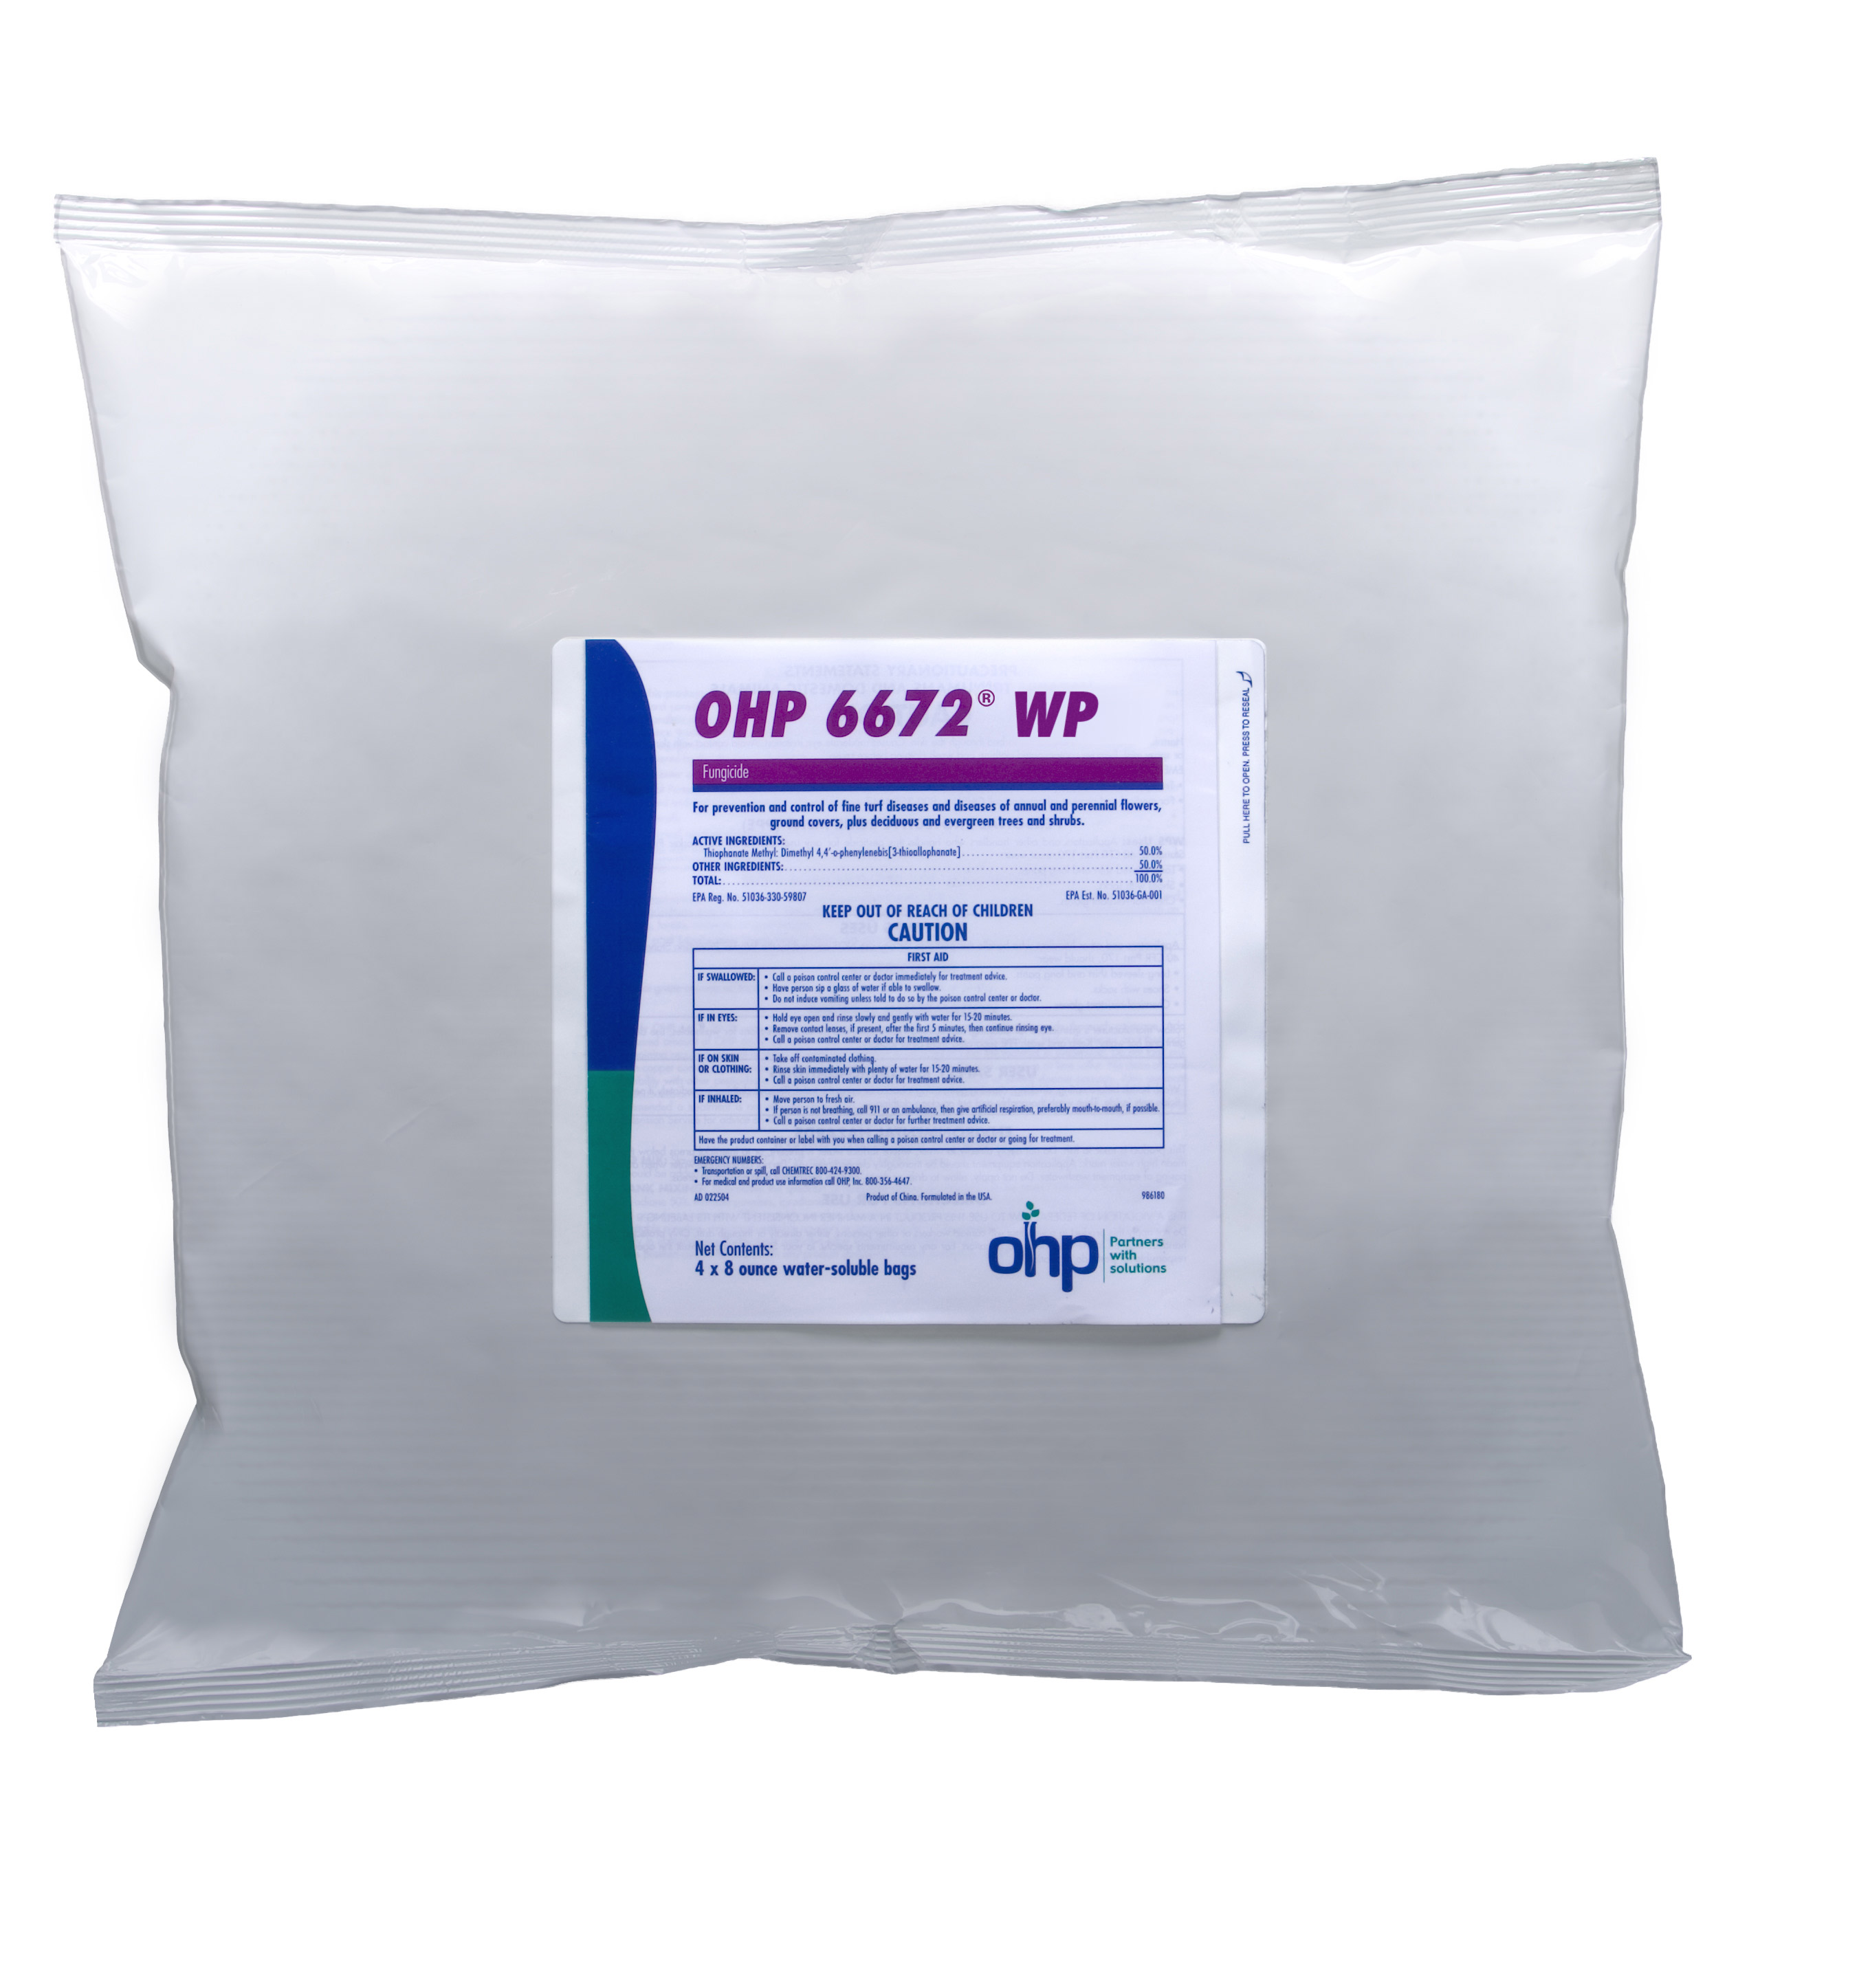 OHP 6672 50 WP (4-8 oz) 2 lb Bag - 6 per case